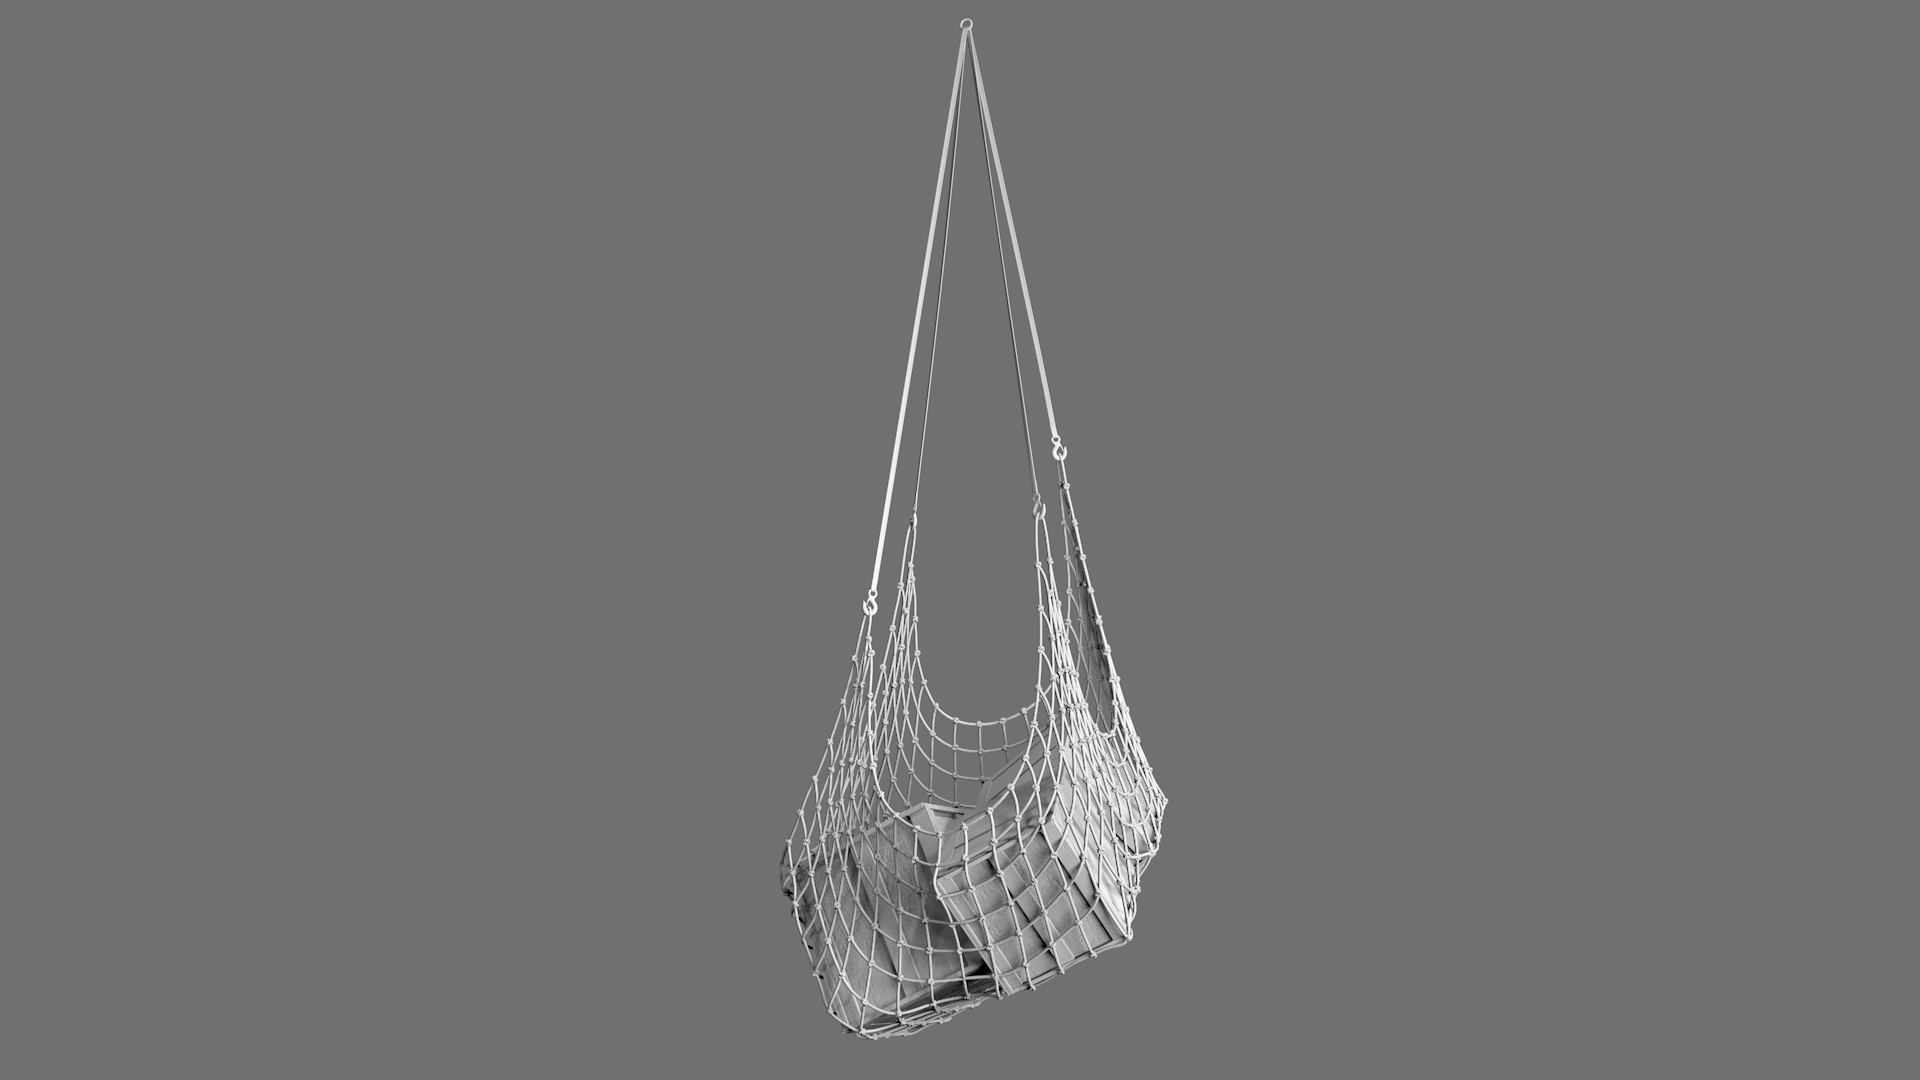 Hanging Rope Cargo Net 3D Model - TurboSquid 1470344